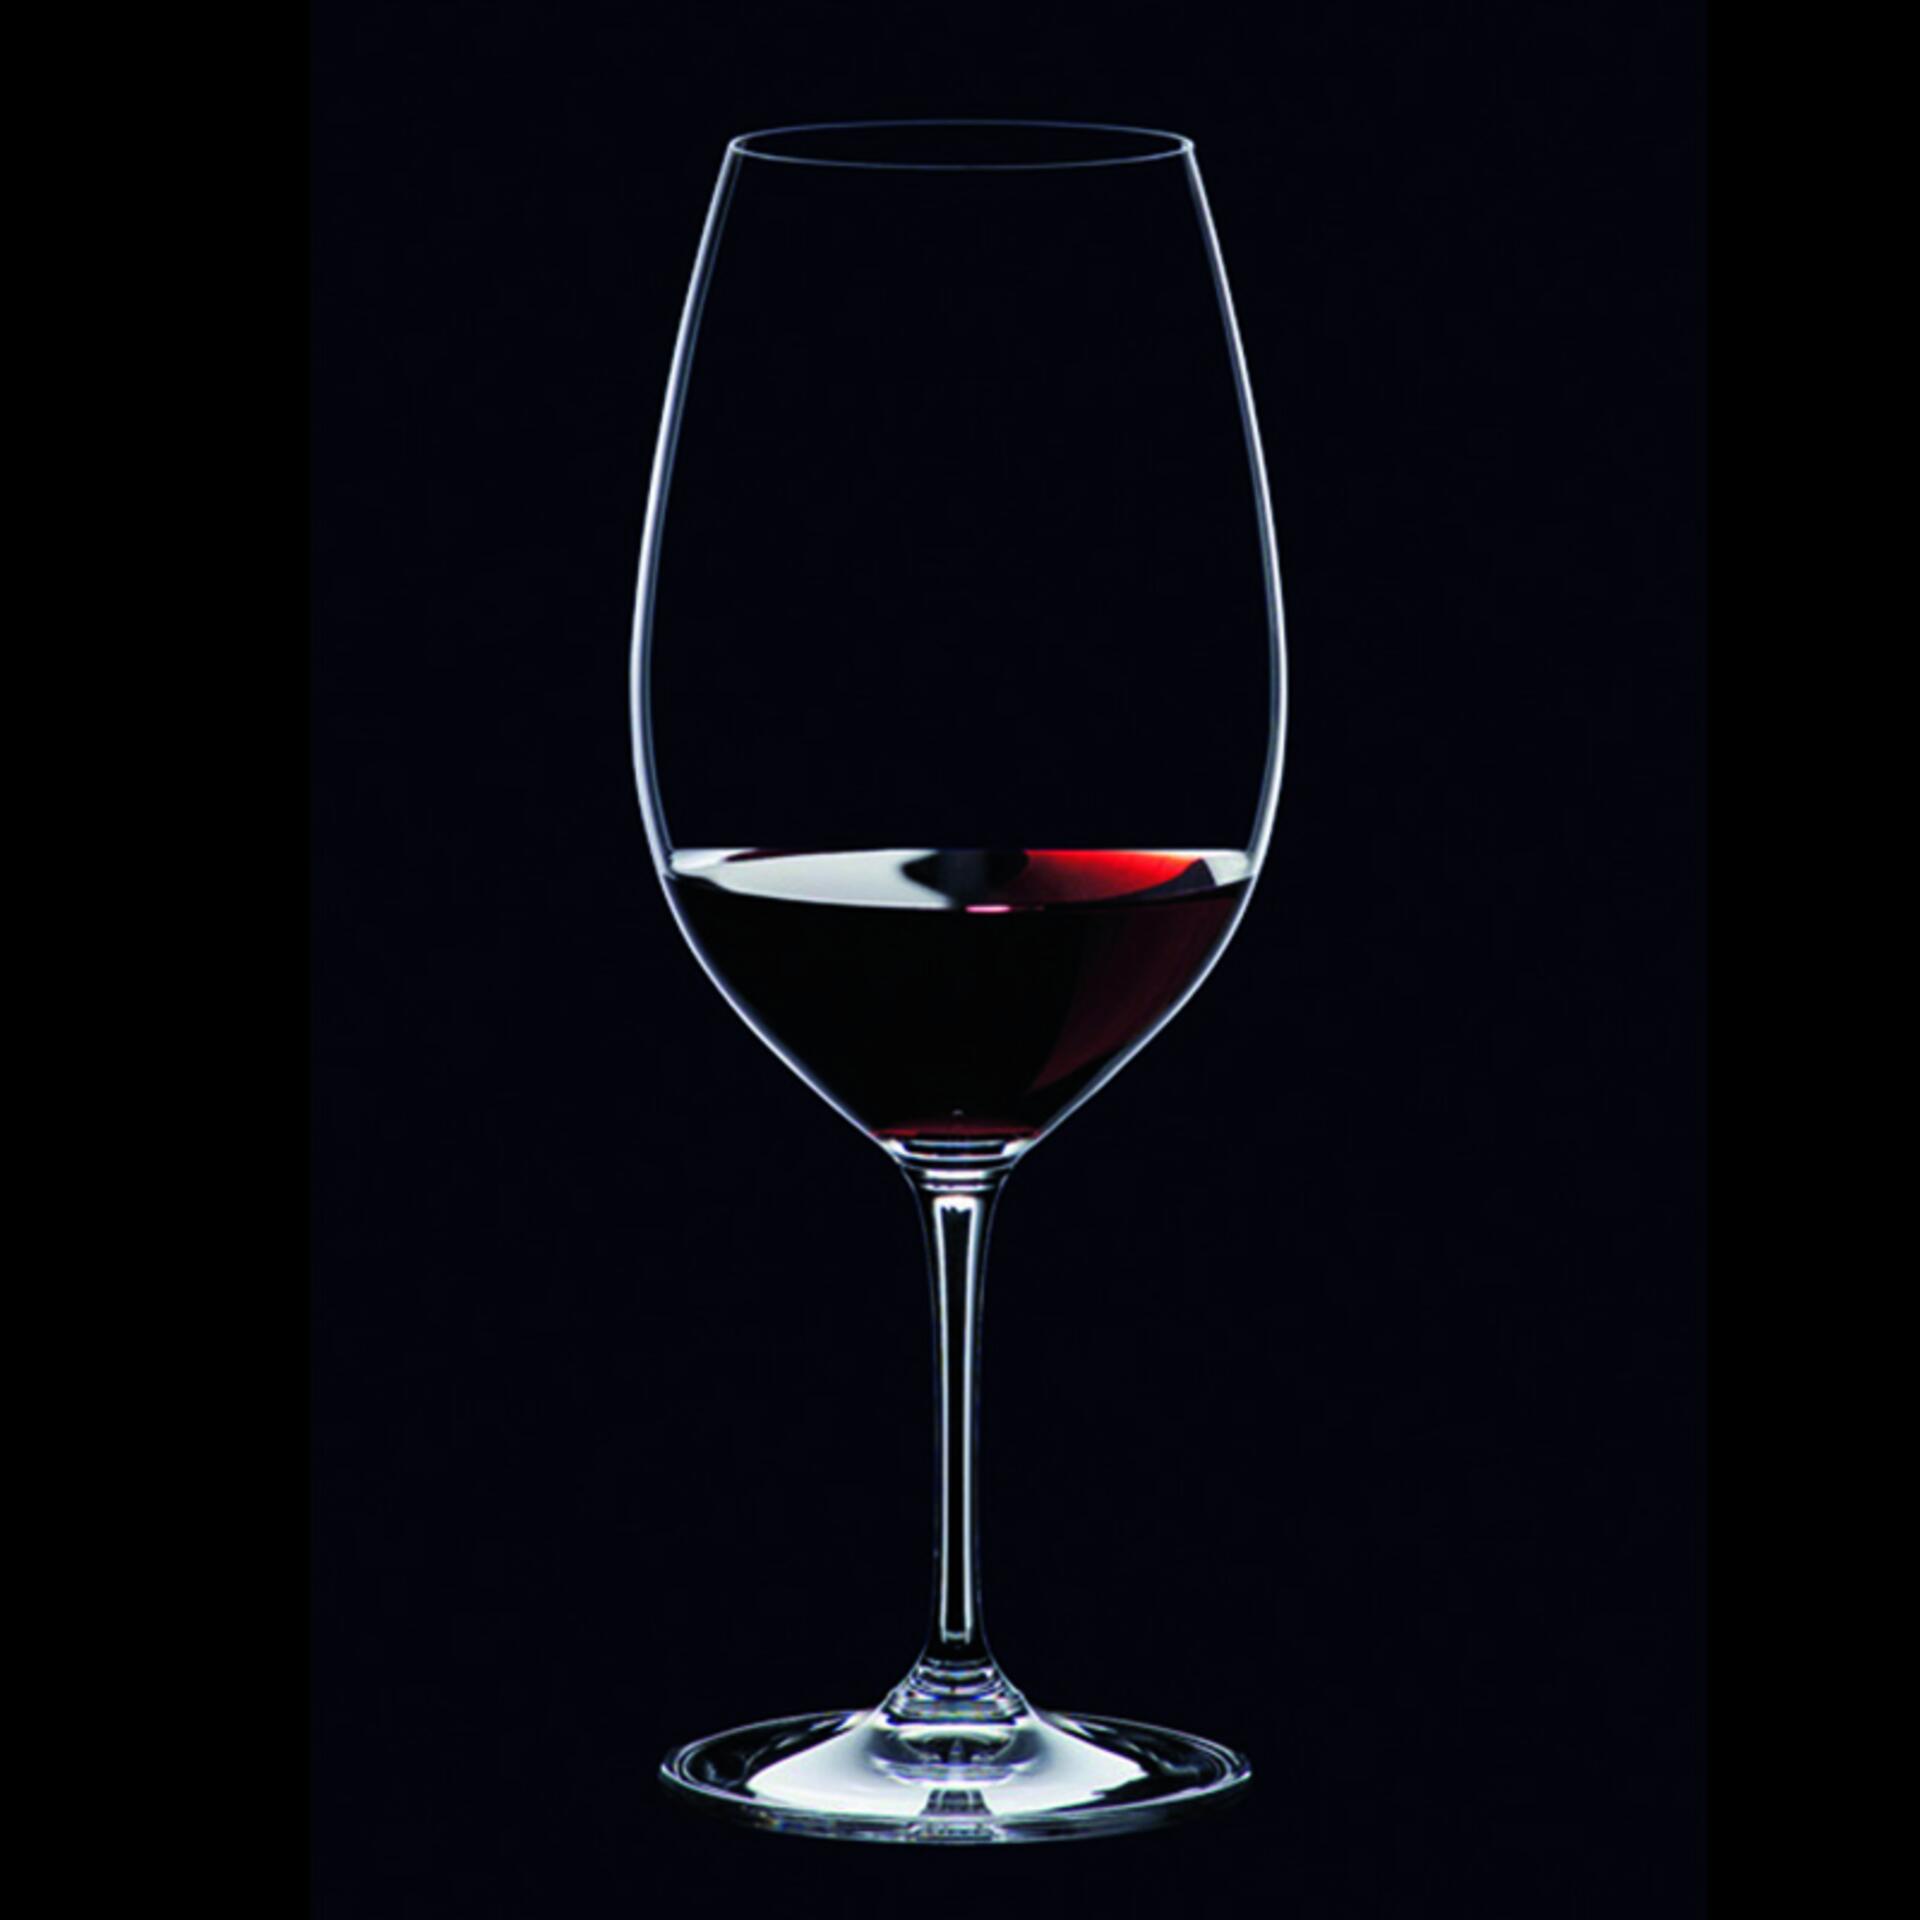 Riedel Vinum Rotweinglas Syrah / Shiraz 2 Stück 6416/30